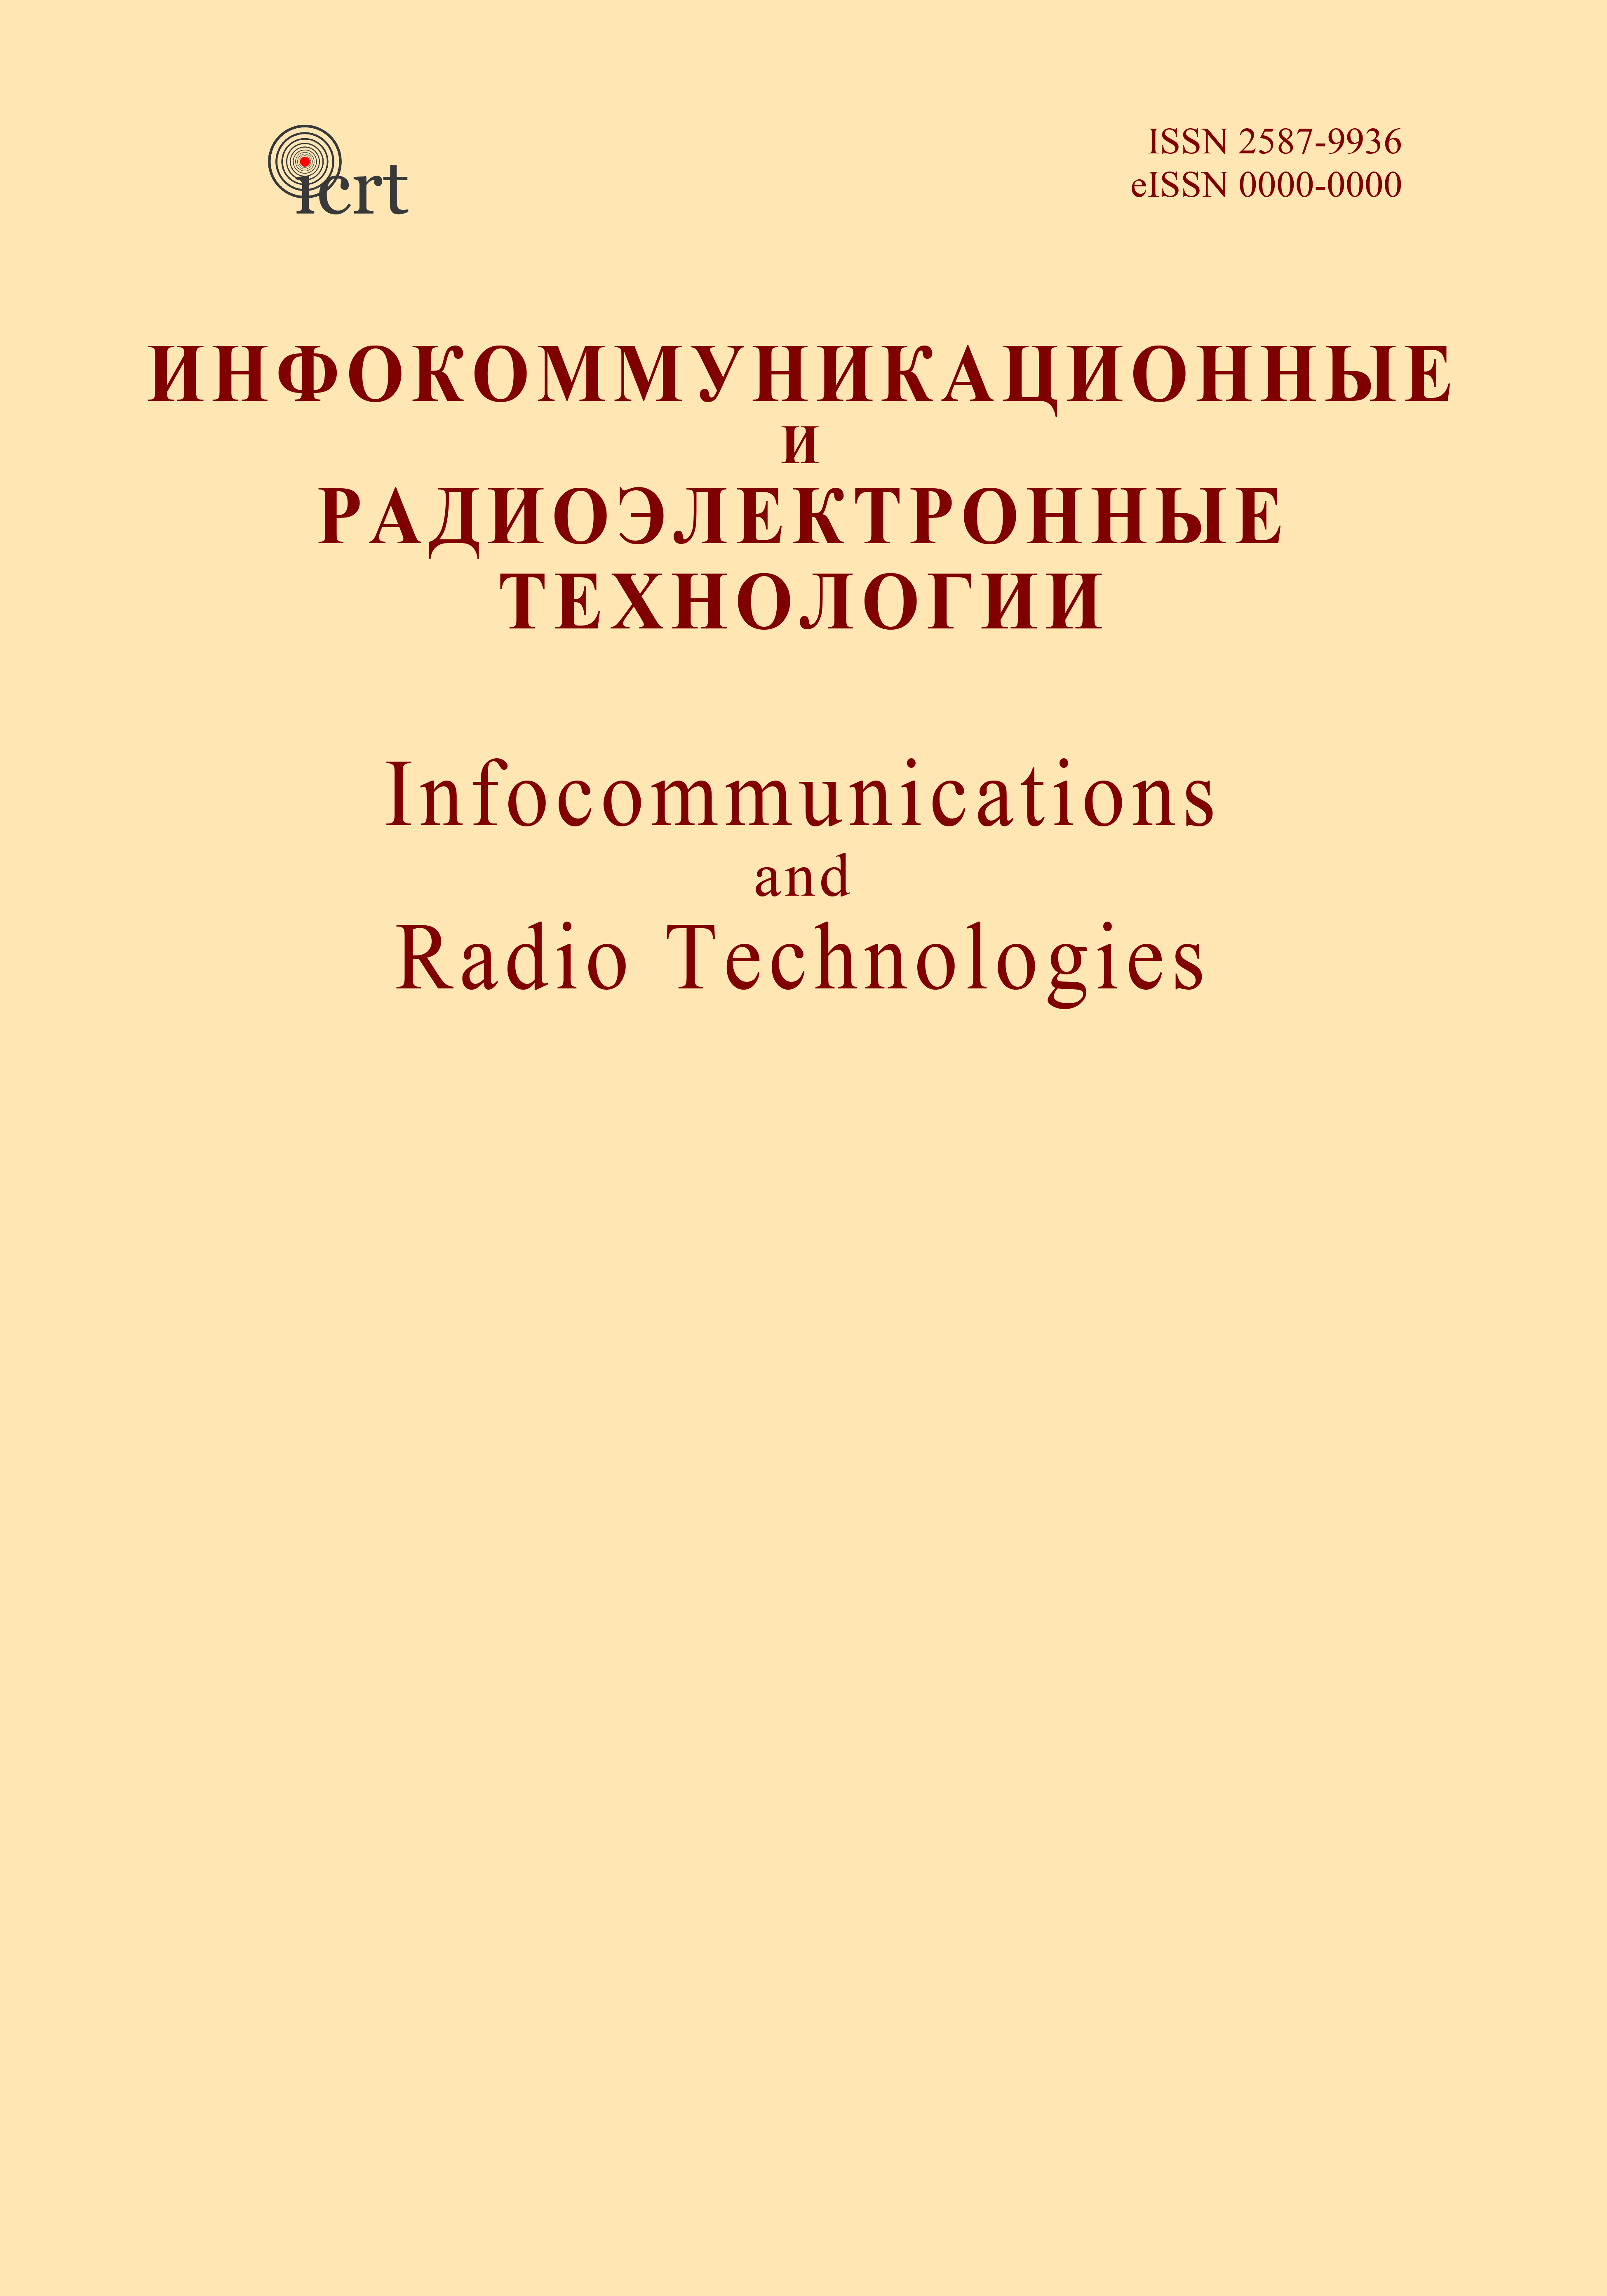             Автодинный радиоспектроскоп - гениальное изобретение Е. К. Завойского
    